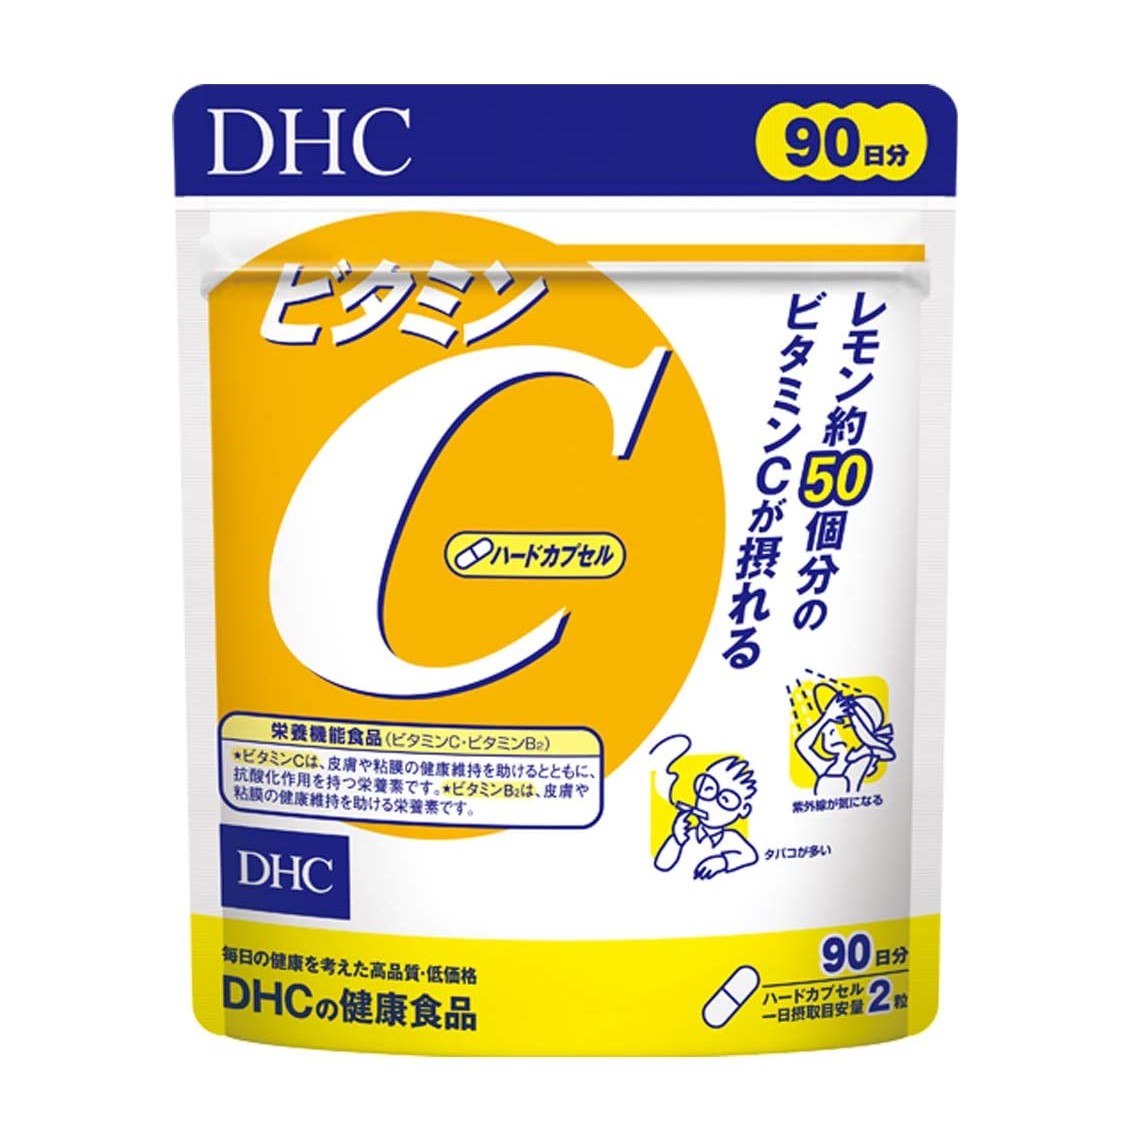 DHC Vitamin C 180 Capsules (90days)